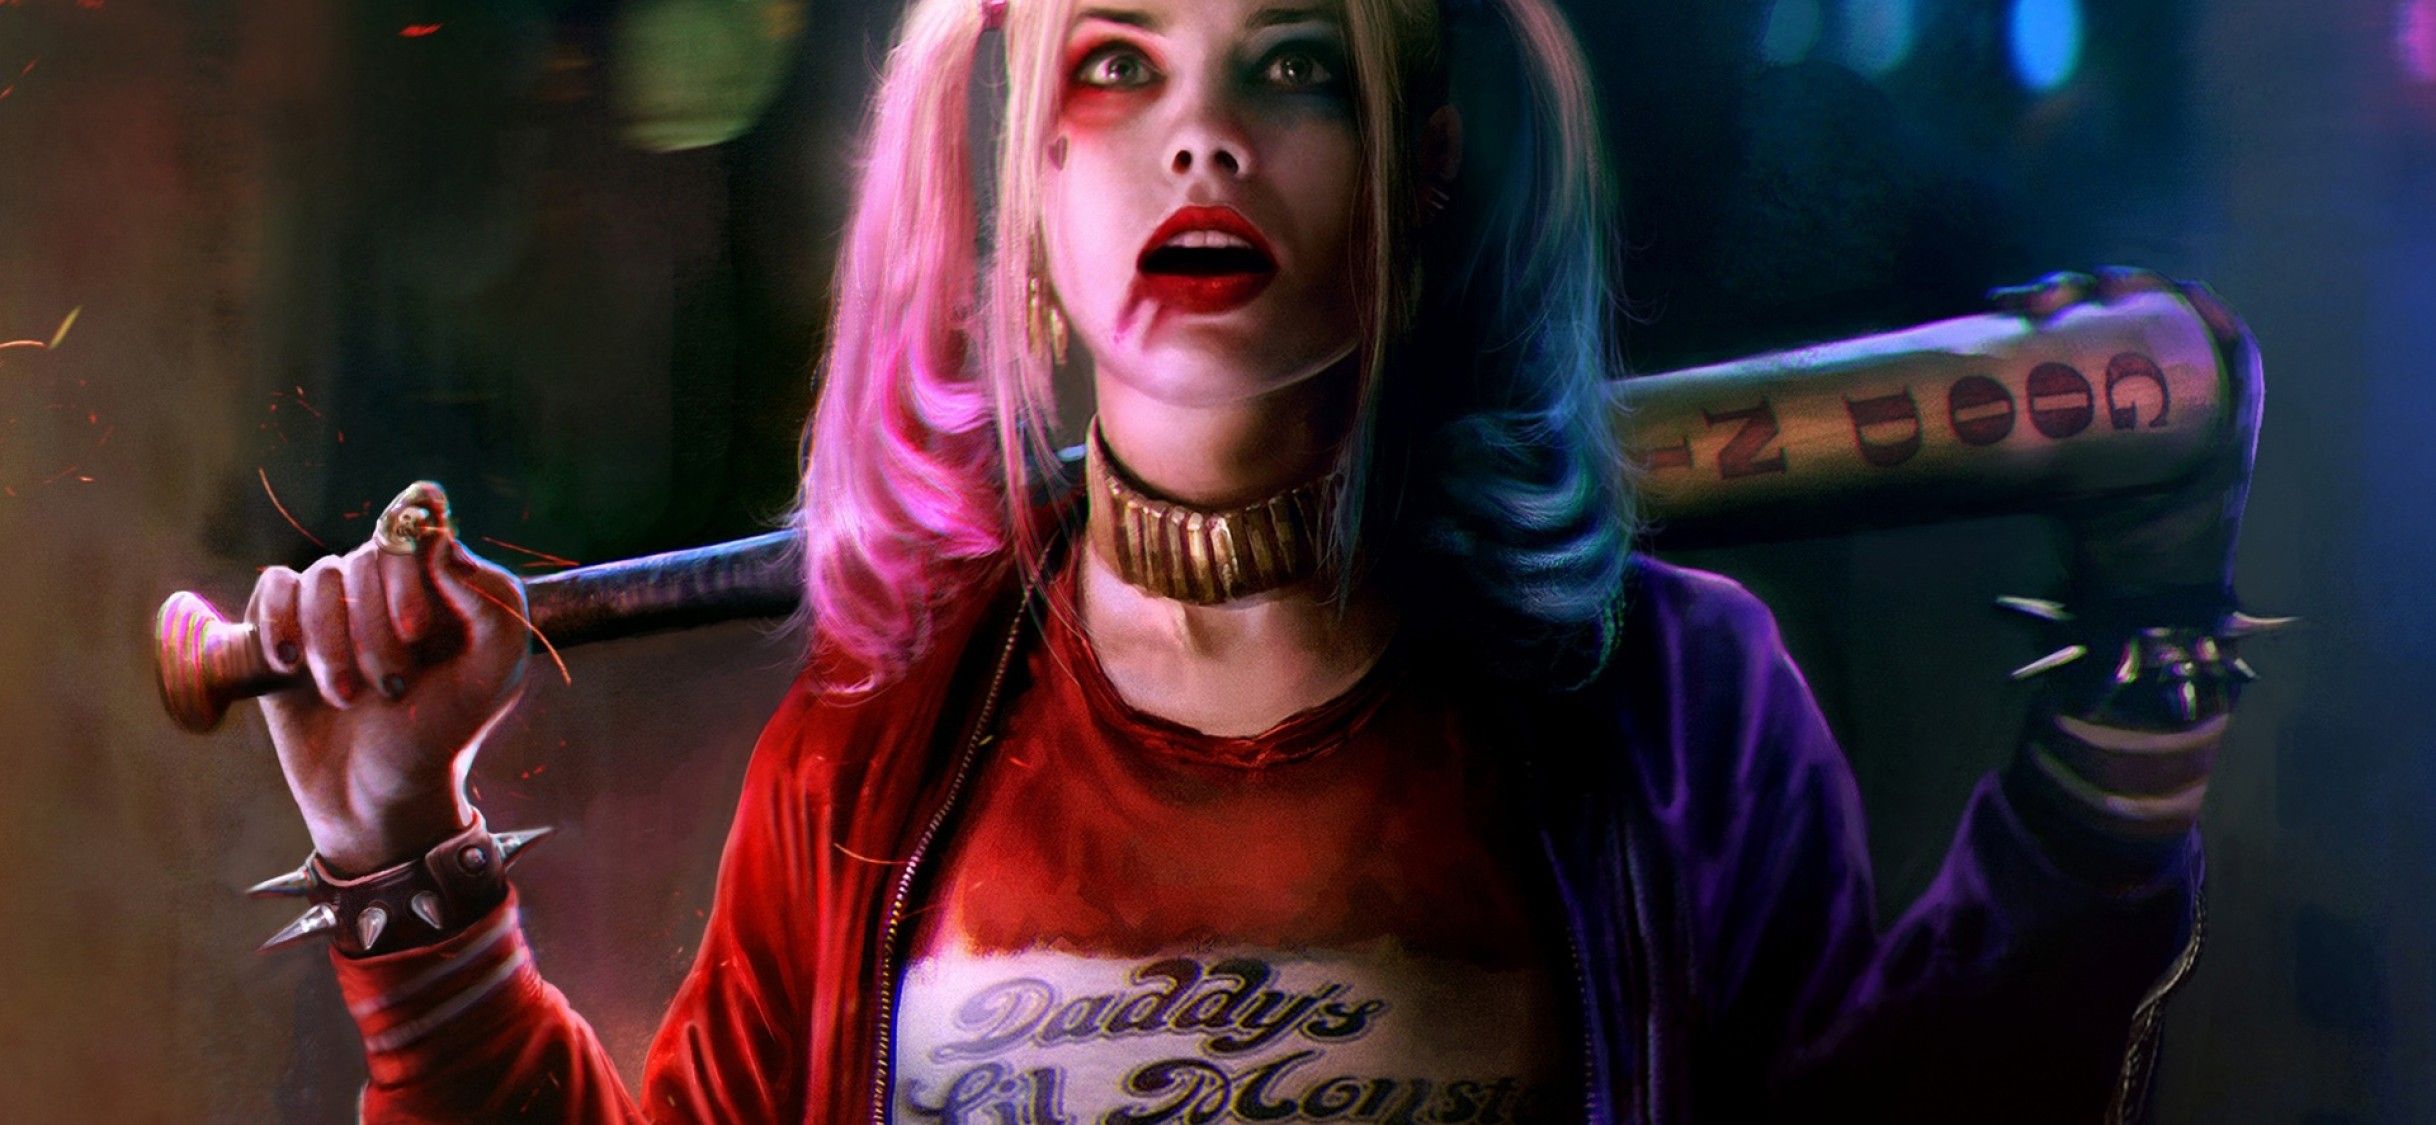 Margot Robbie Harley Quinn & Joker Wallpaper for Desktop